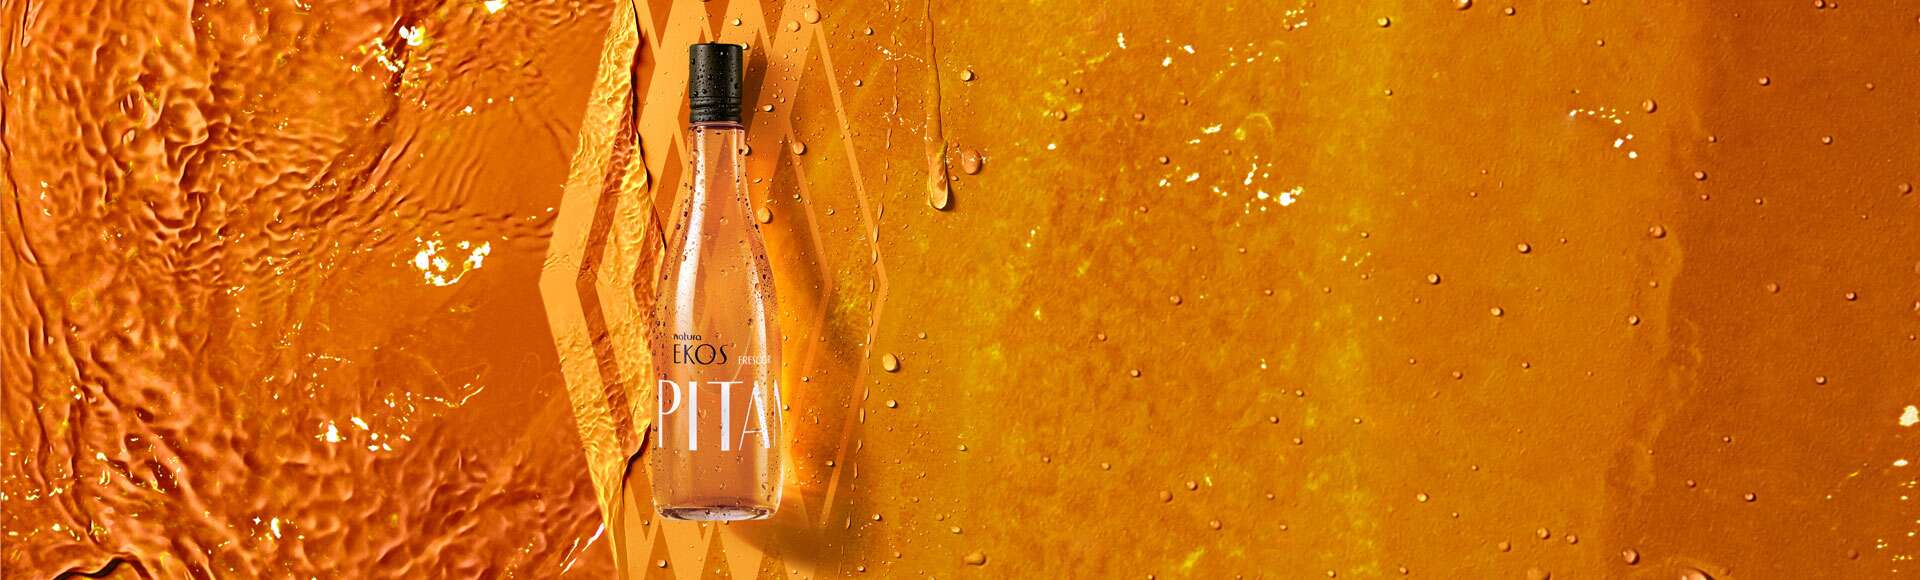 Natura Ekos Pitanga Perfume: Fruity, Spicy & 100% Natural Brazilian Biodiversity. Enriched with Pitanga Essential Oil 150 ml